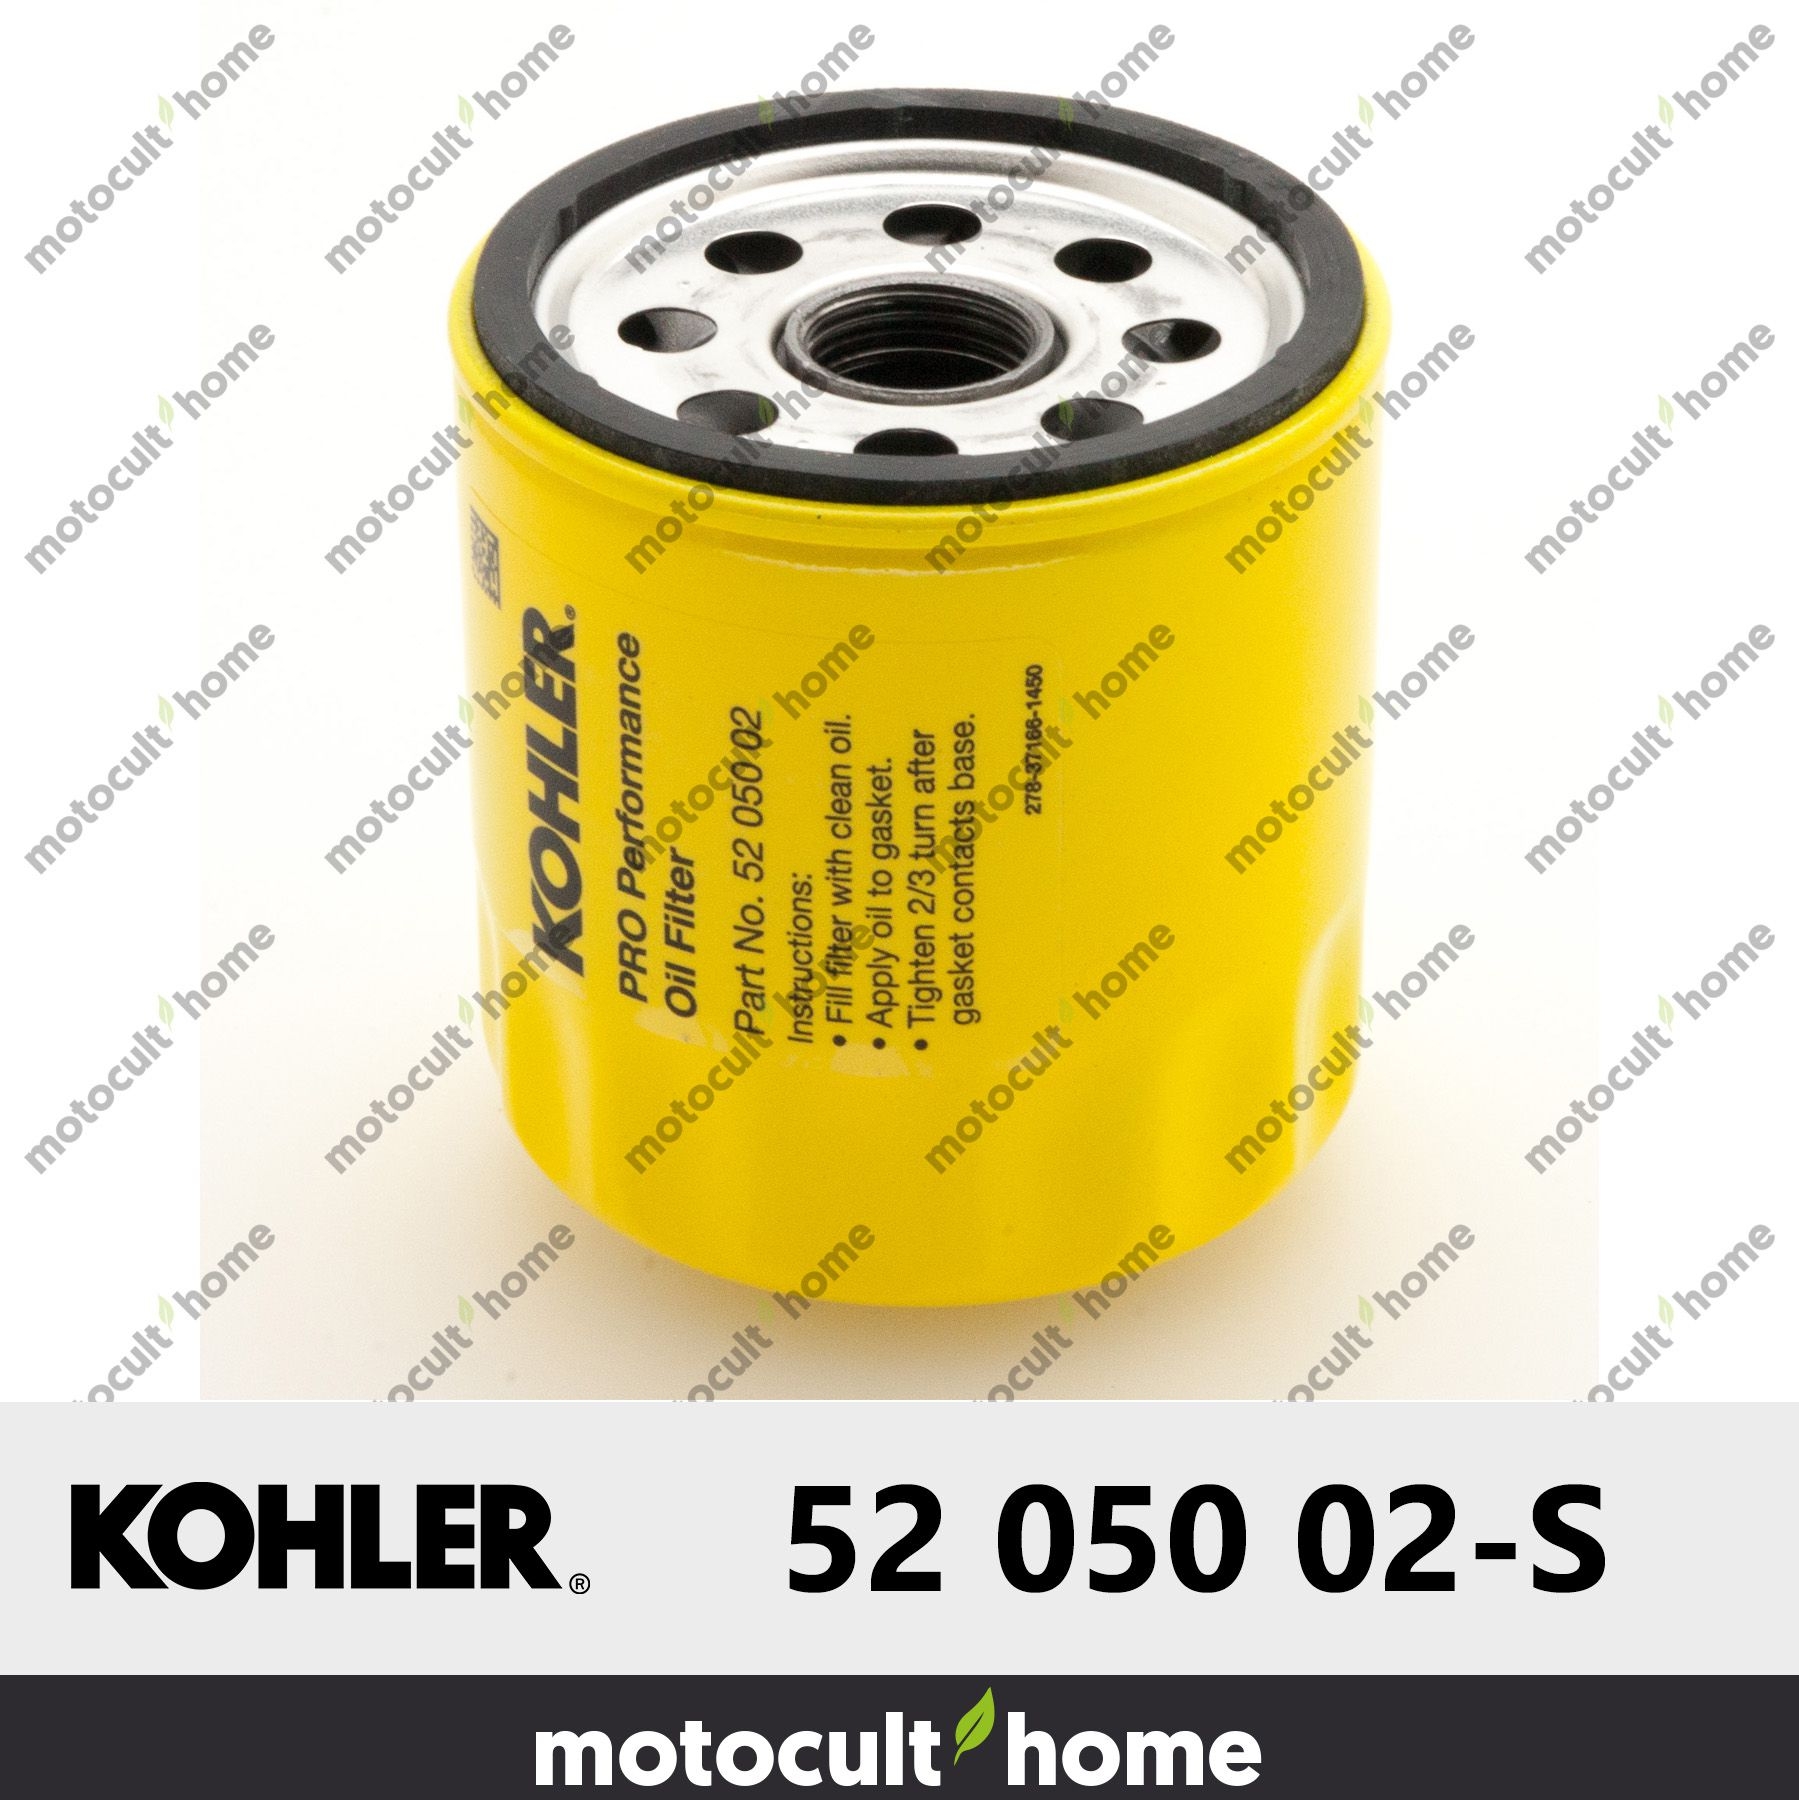 52 050 02 US Vendeur 5205002 Lot Set de 3 Kohler Origine Filtre à huile 52 050 02-S 